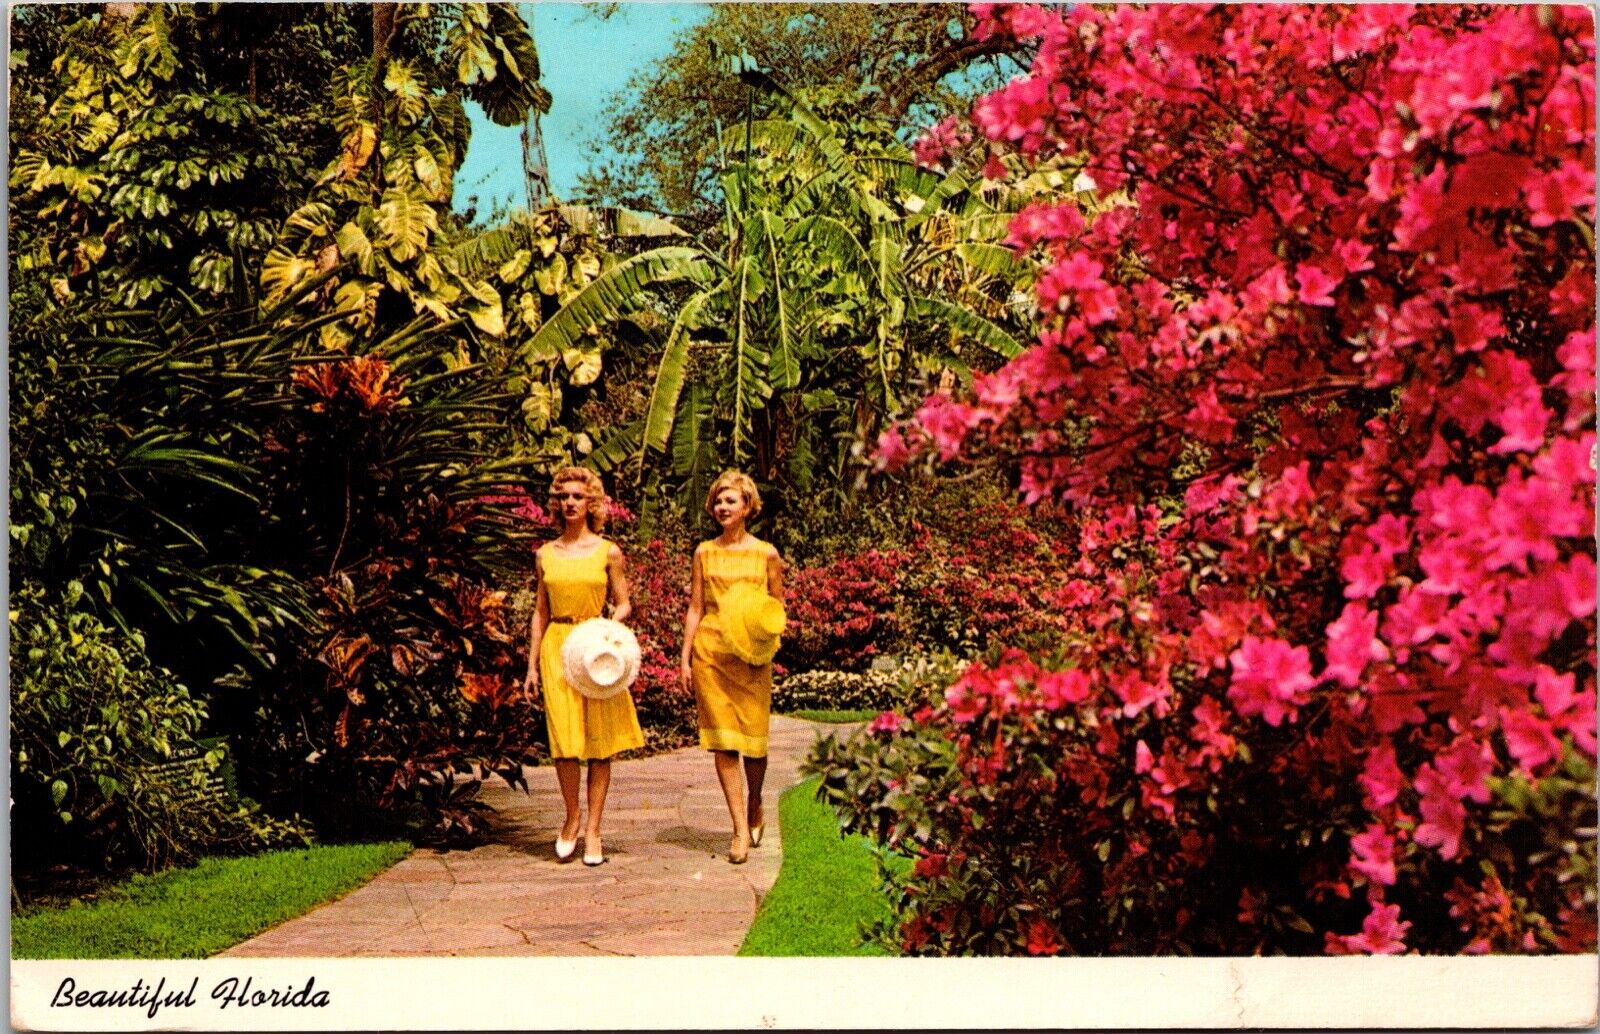 Postcard - Brilliant Azaleas Border a Walk in a Florida Tropical Garden, USA